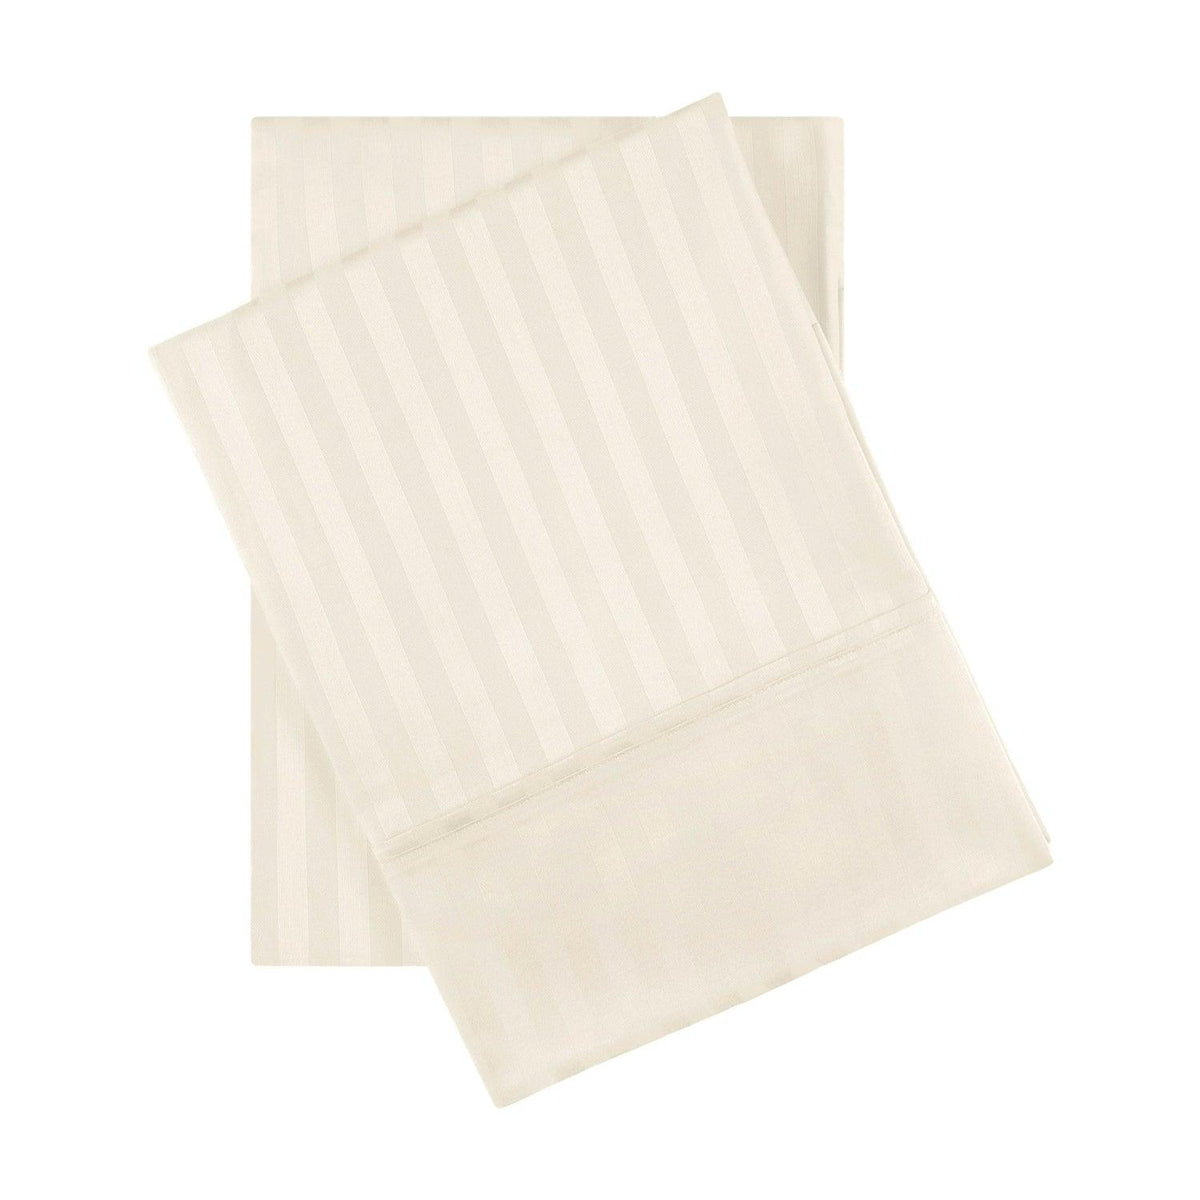 Premium 600 Thread Count Egyptian Cotton Striped Pillowcase Set - Ivory